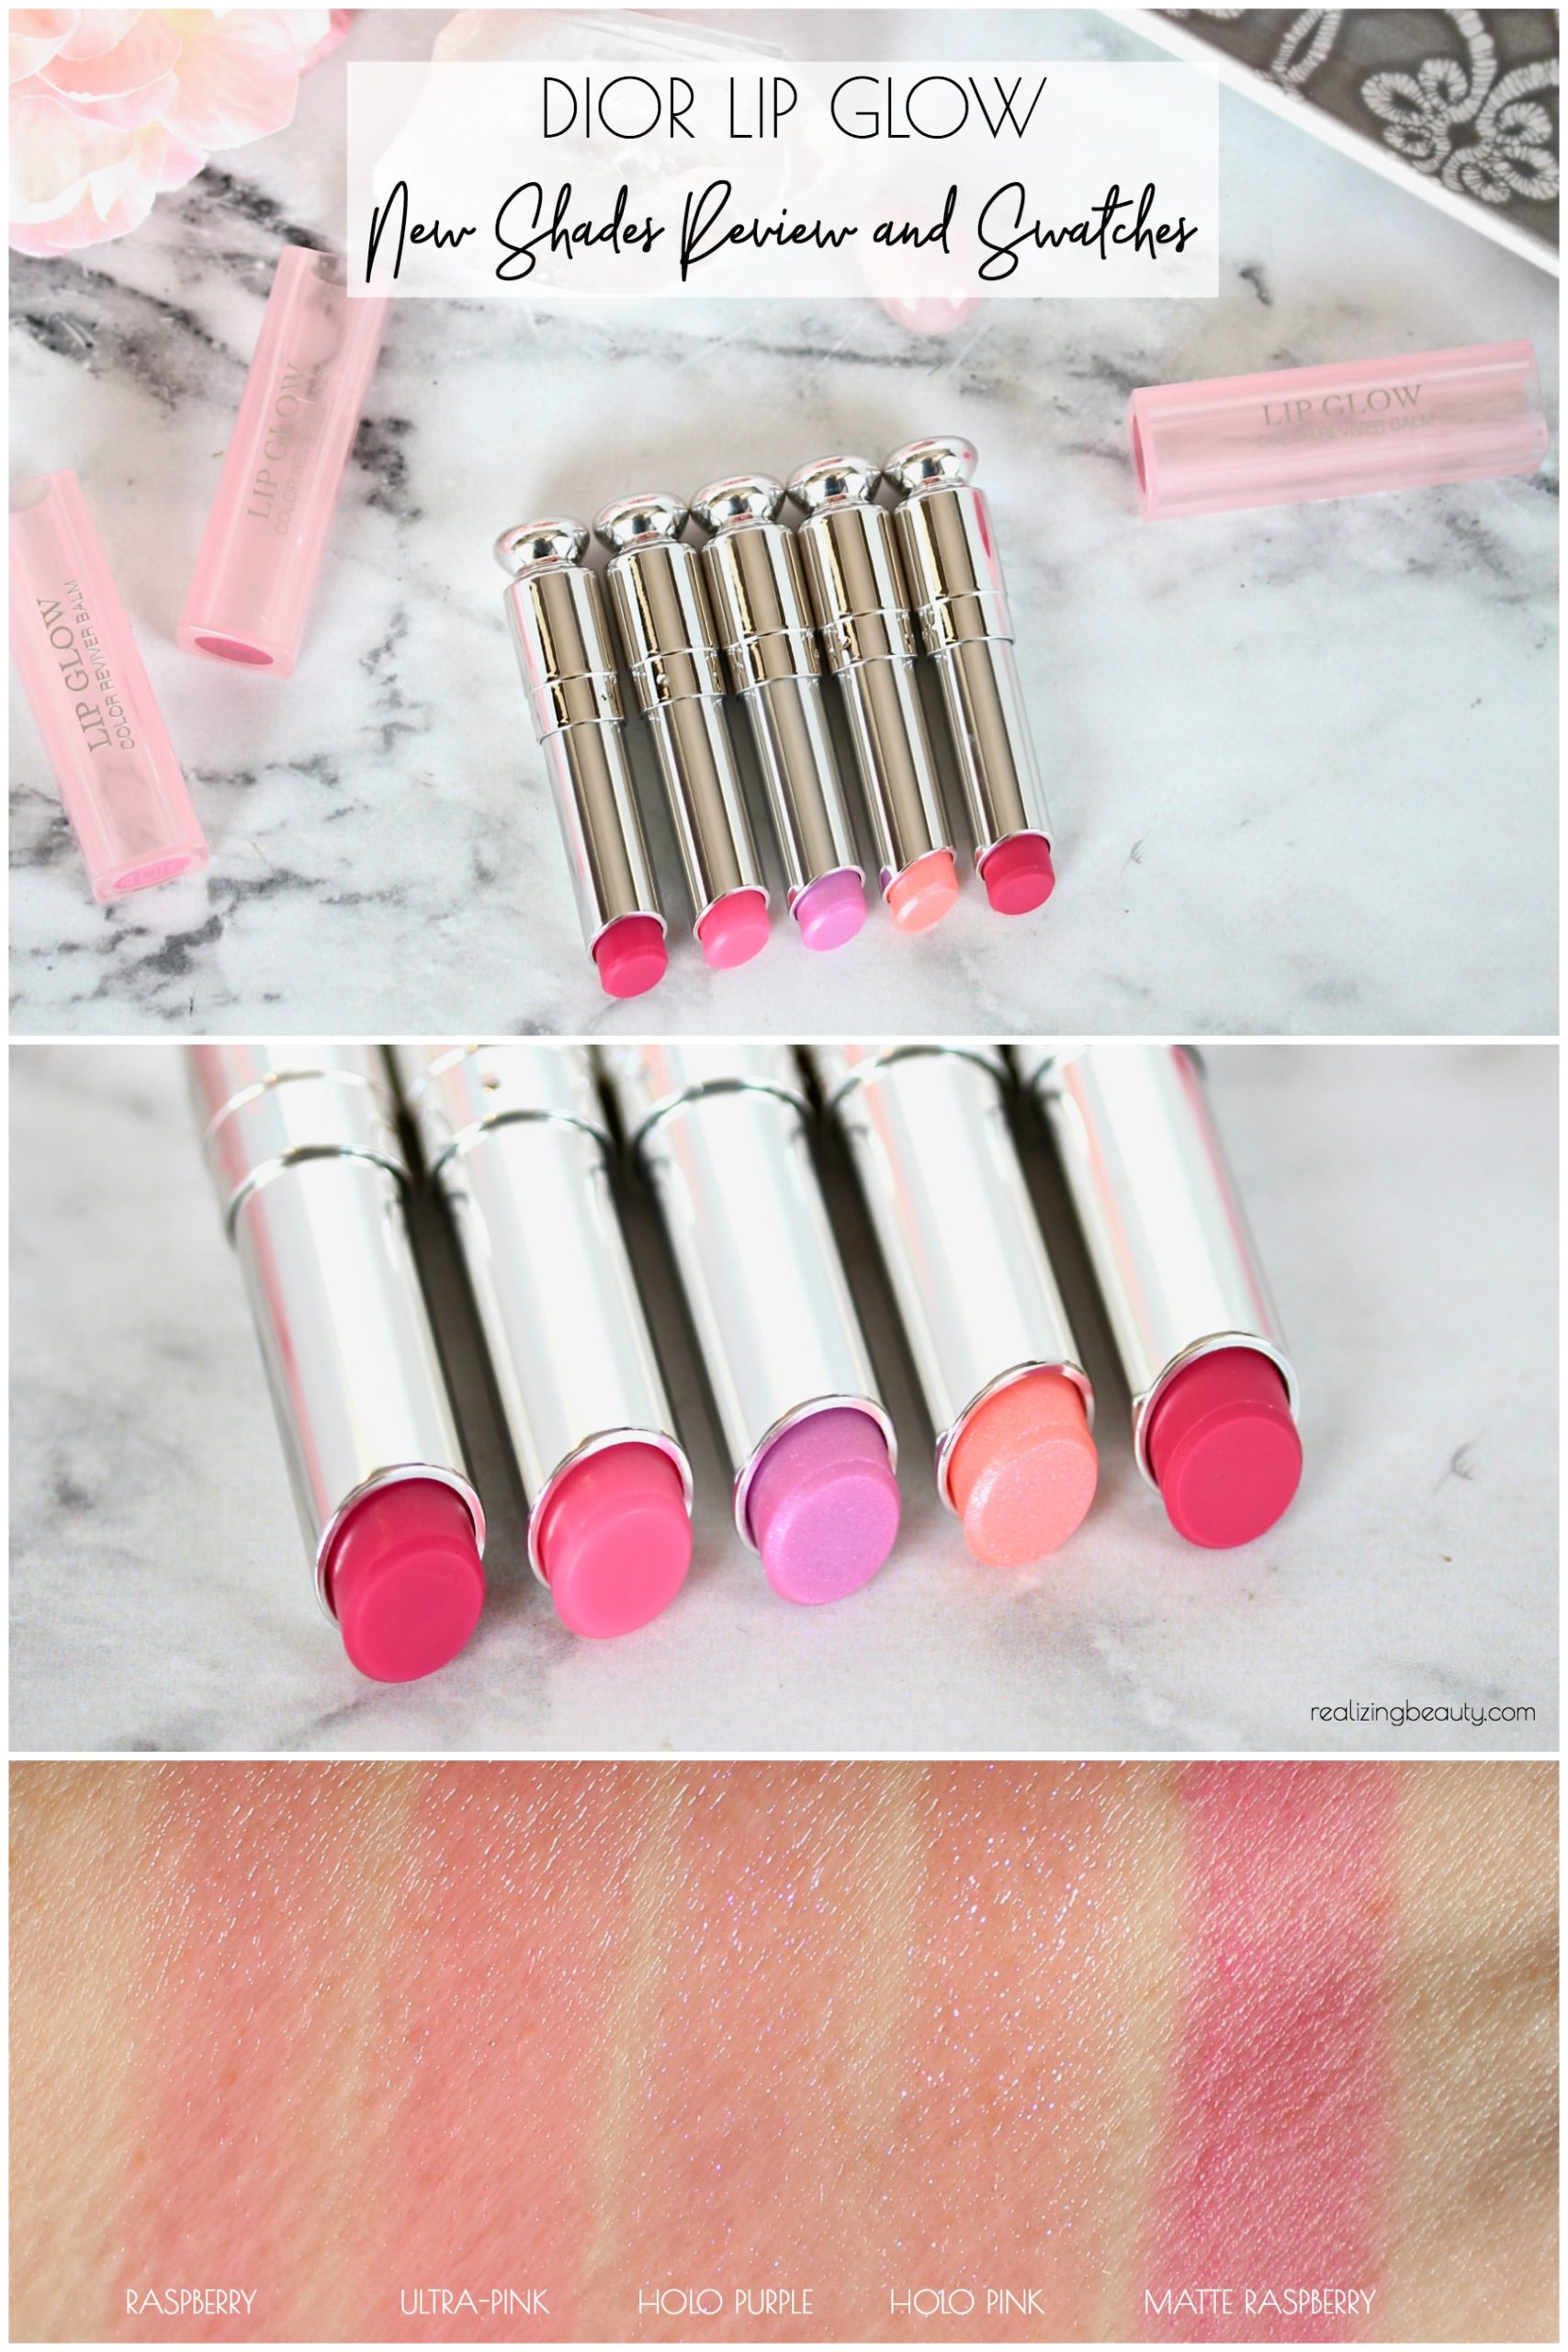 Son Dưỡng Dior Addict Lip Glow 101 Matte Pink  Lazadavn